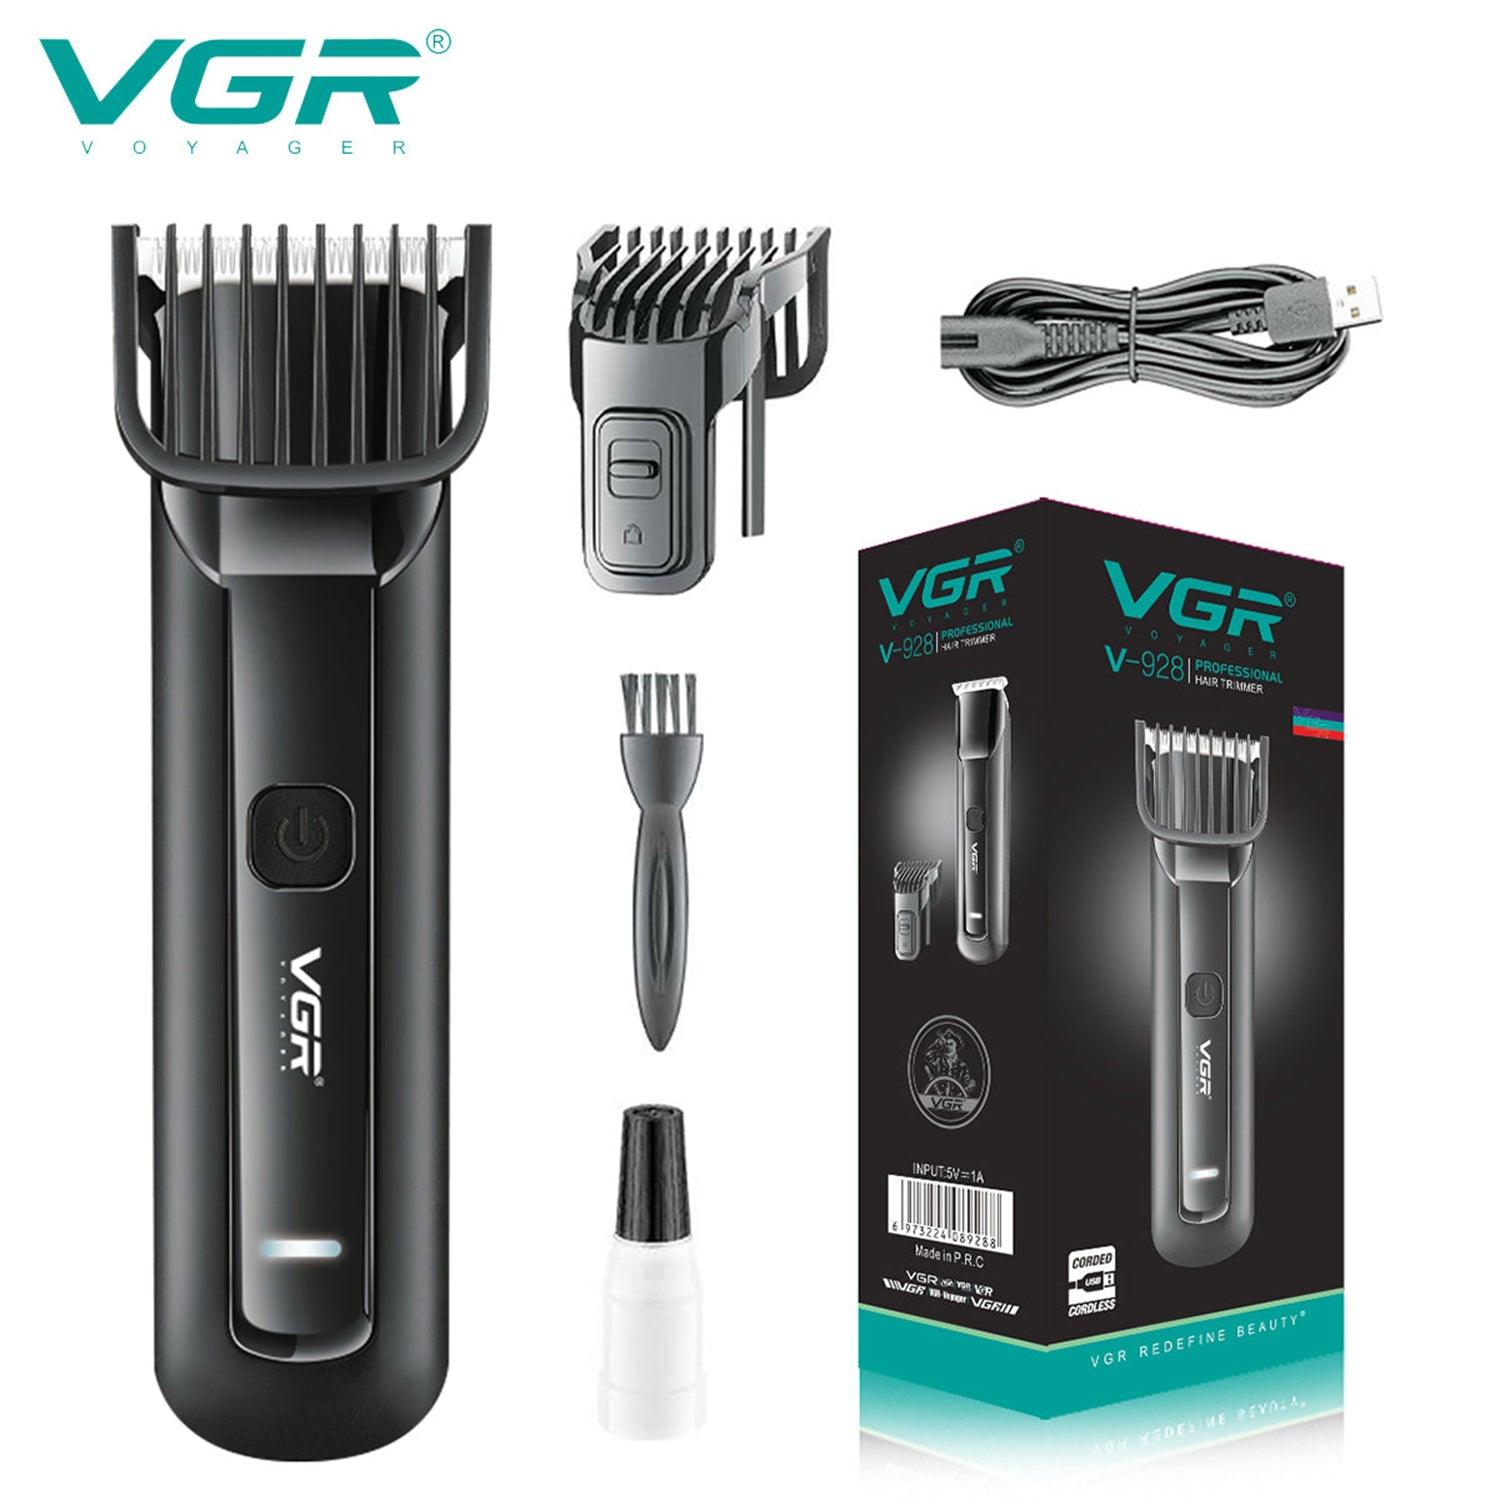 VGR, VGRindia, VGRofficial, VGR V-928